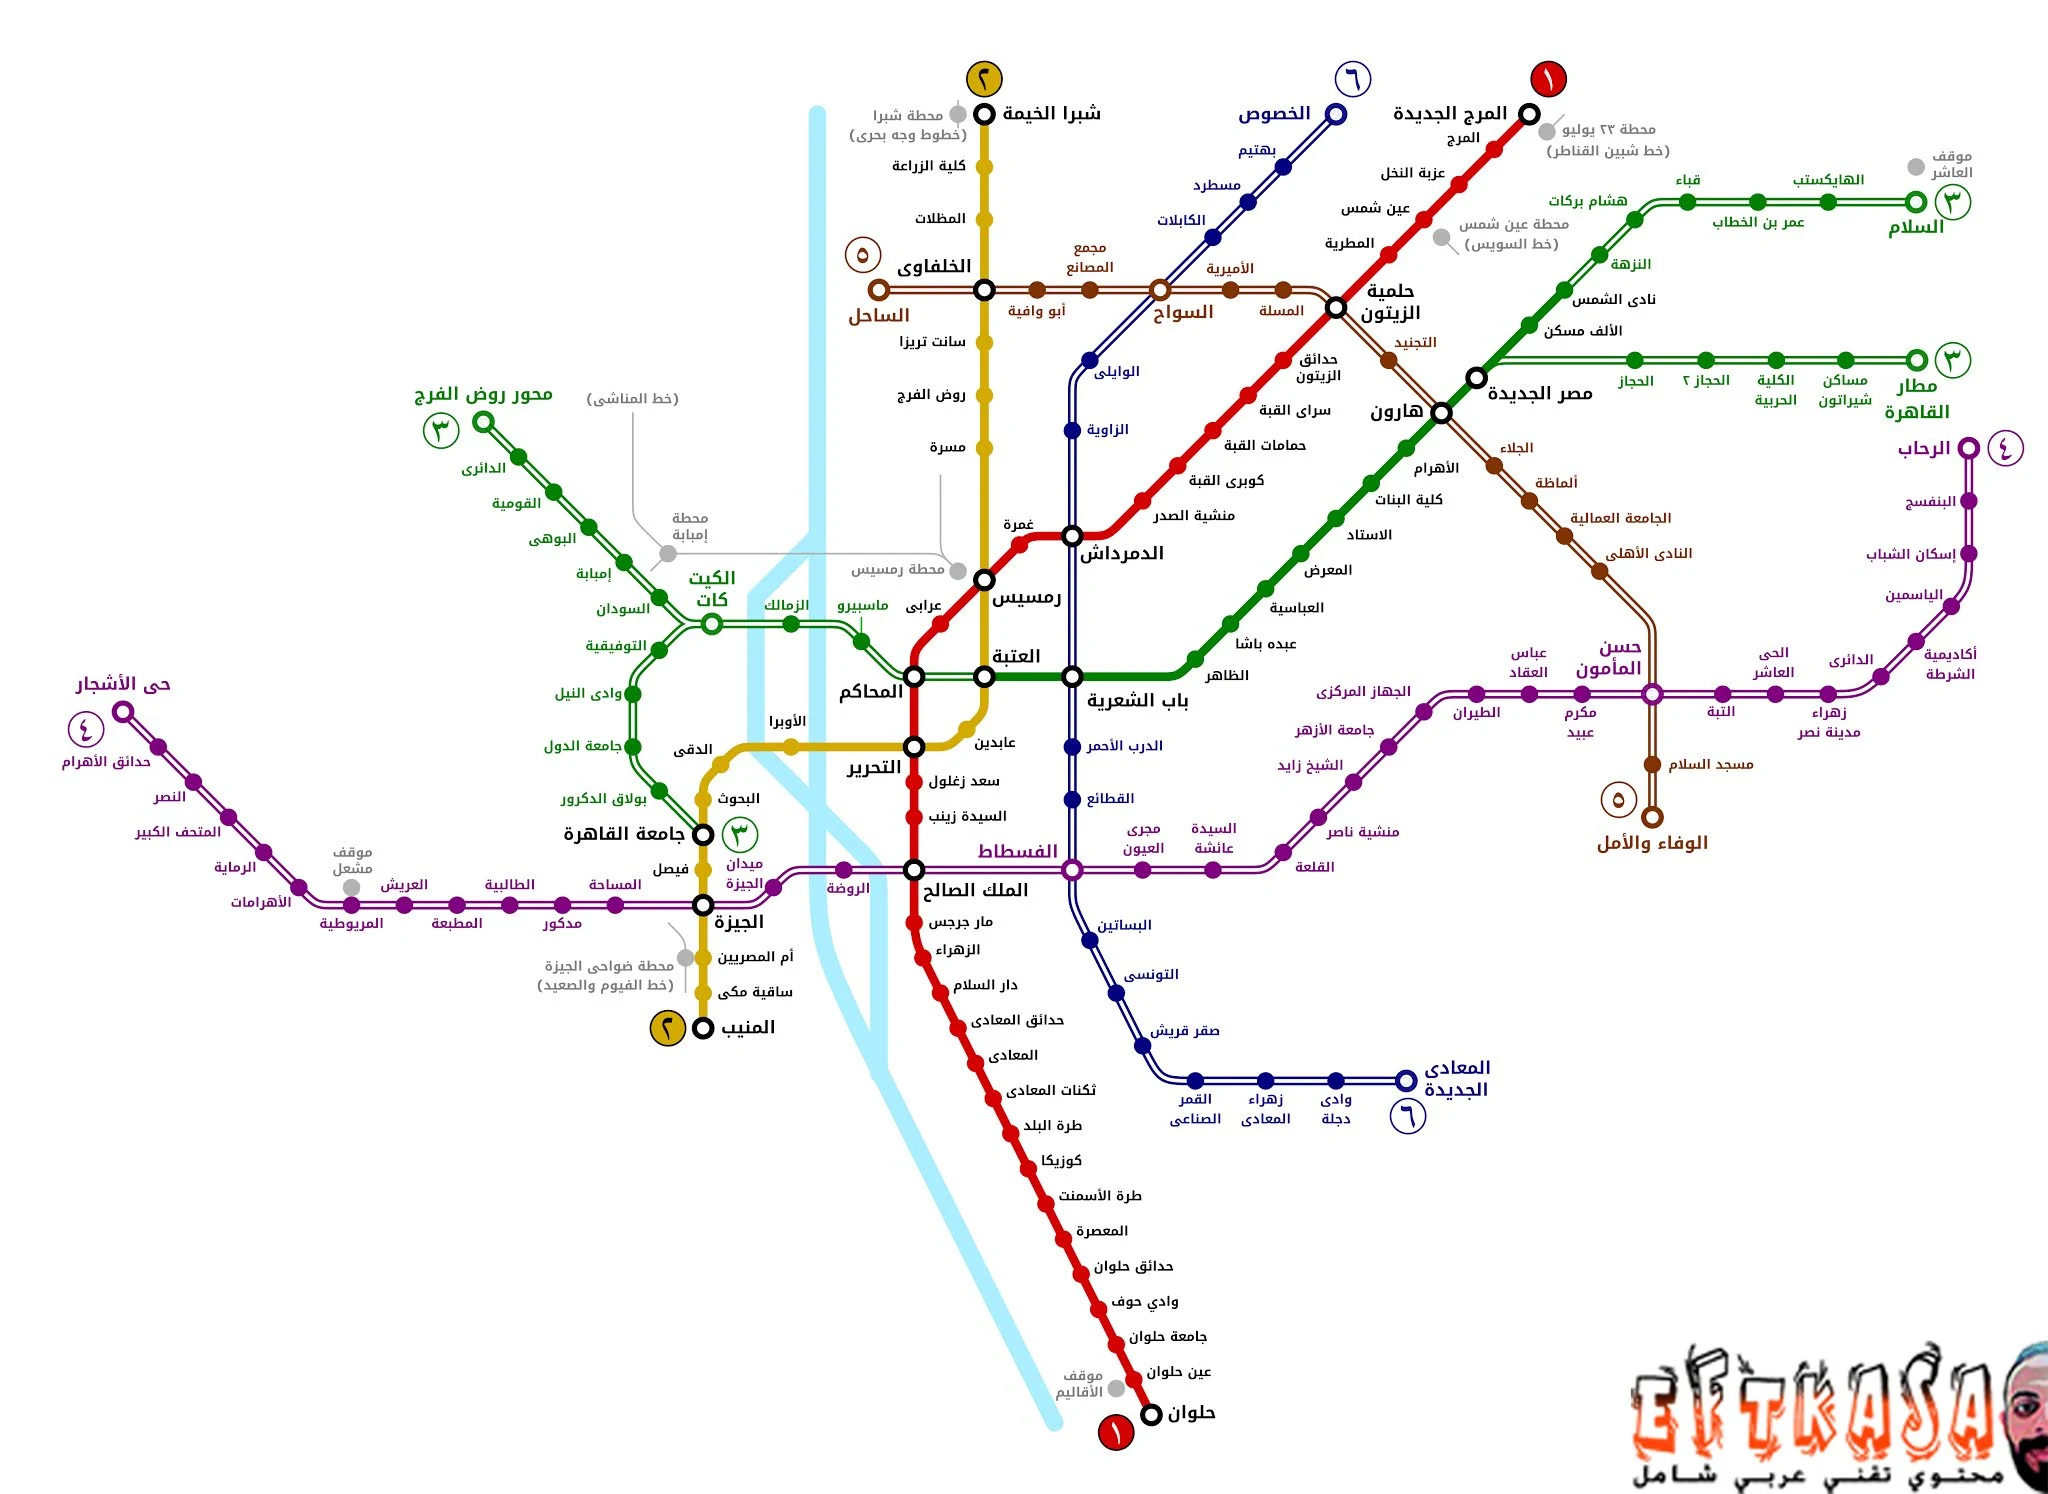 خريطة خطوط مترو القاهرة الحالية والمخطط لها